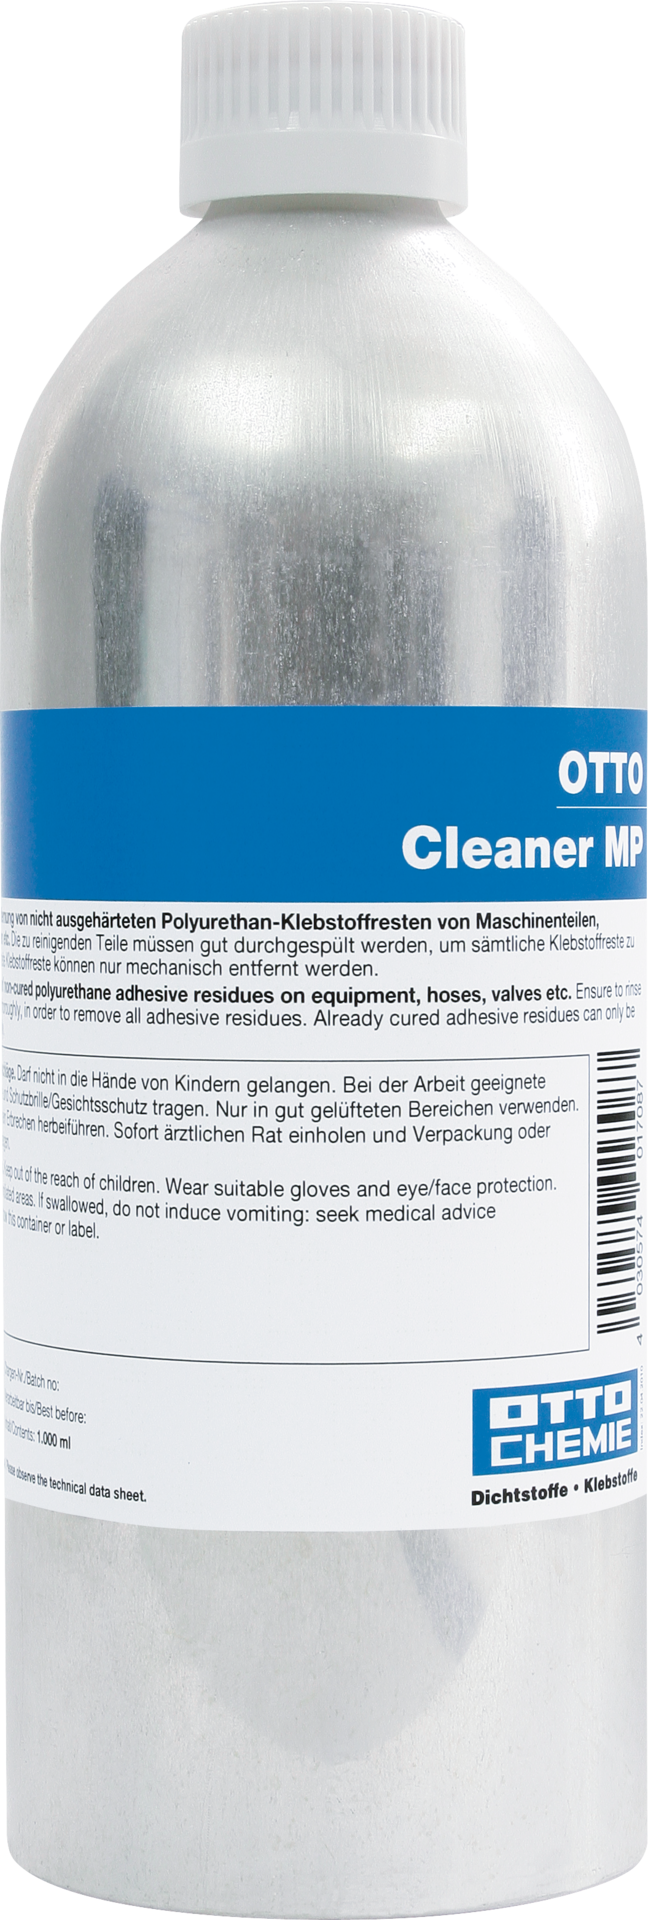 OTTO Cleaner MP Der Geräte-Reiniger 1 Liter